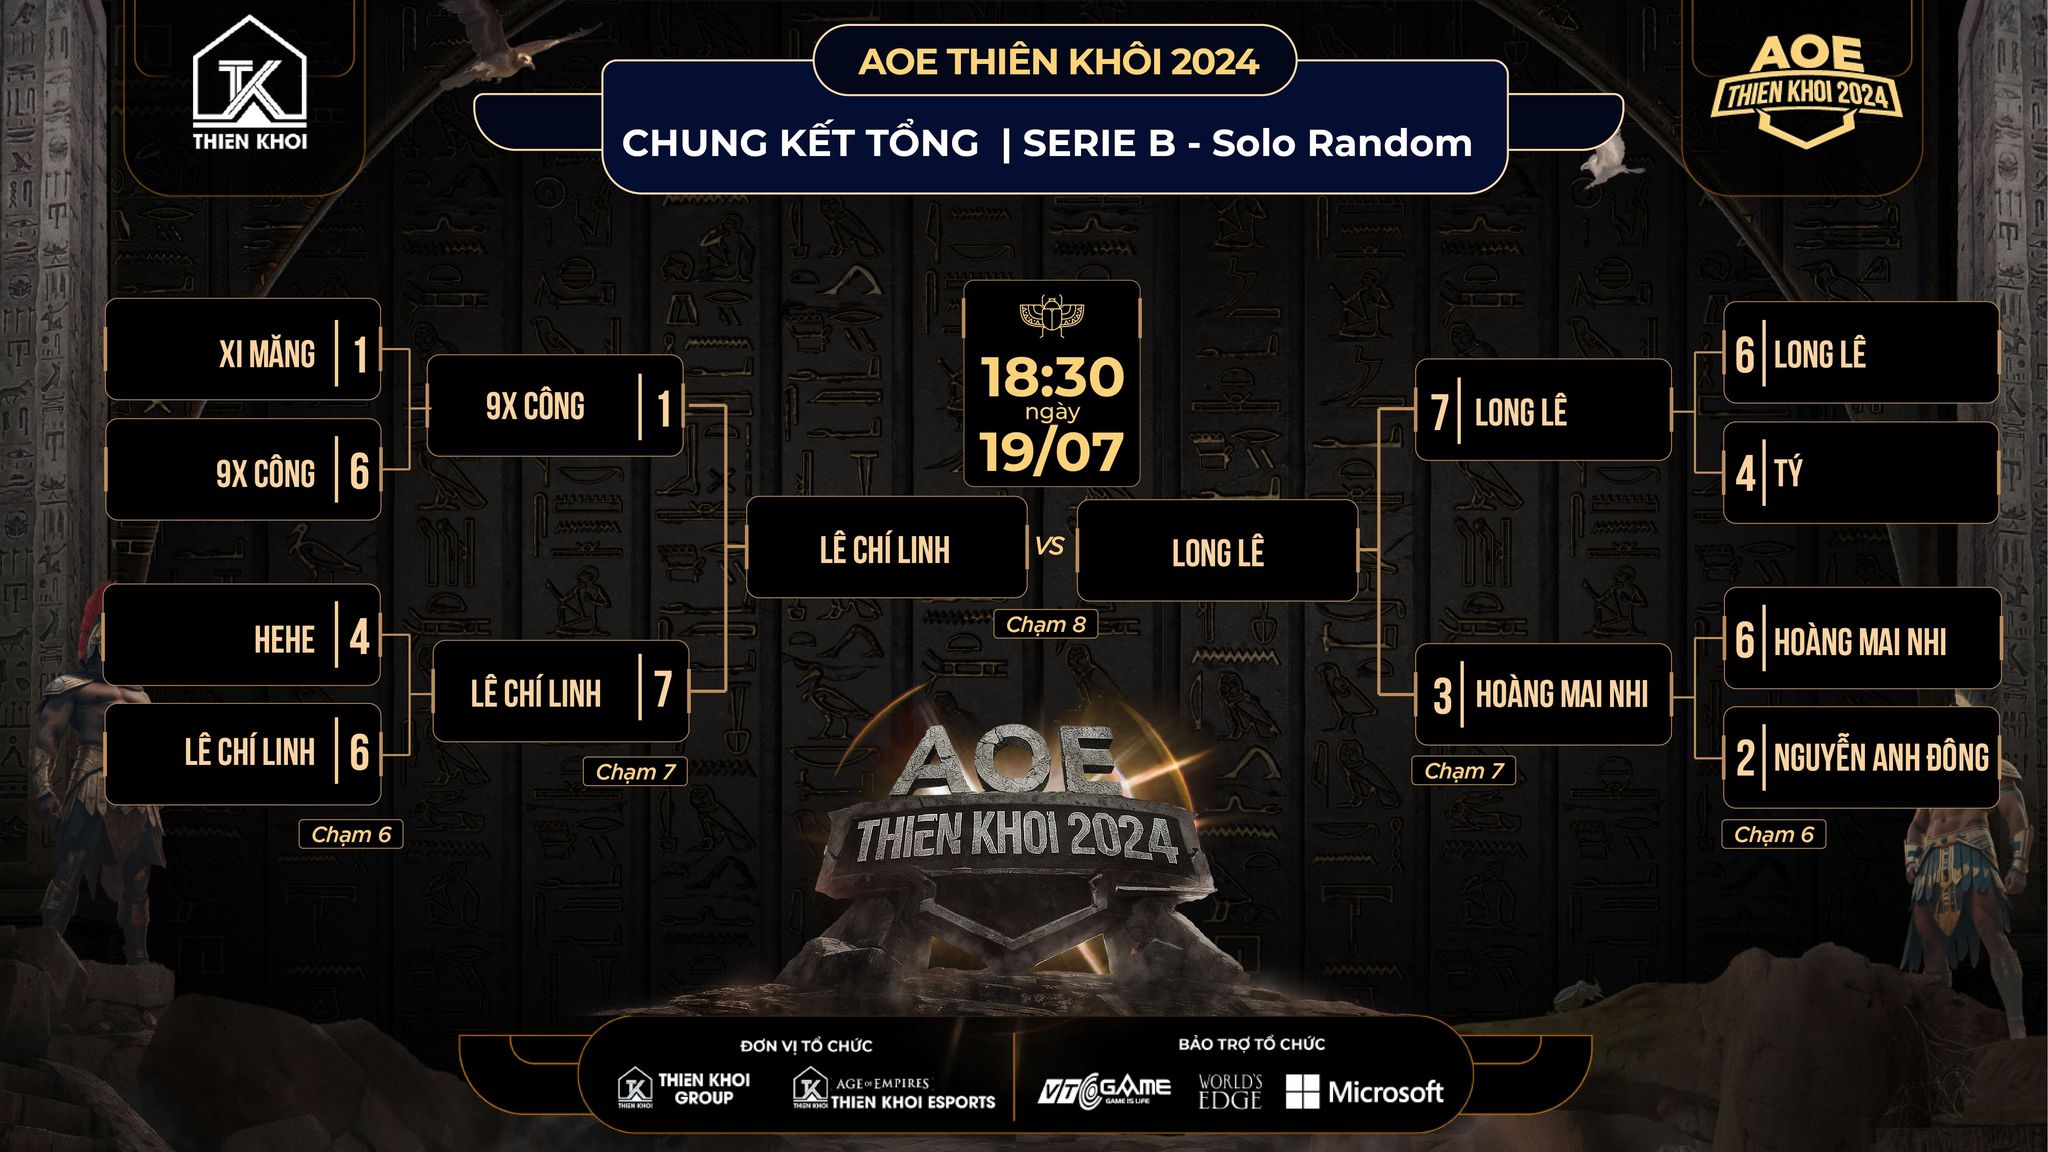 Tổng hợp kết quả Serie B giải đấu AoE Thiên Khôi 2024